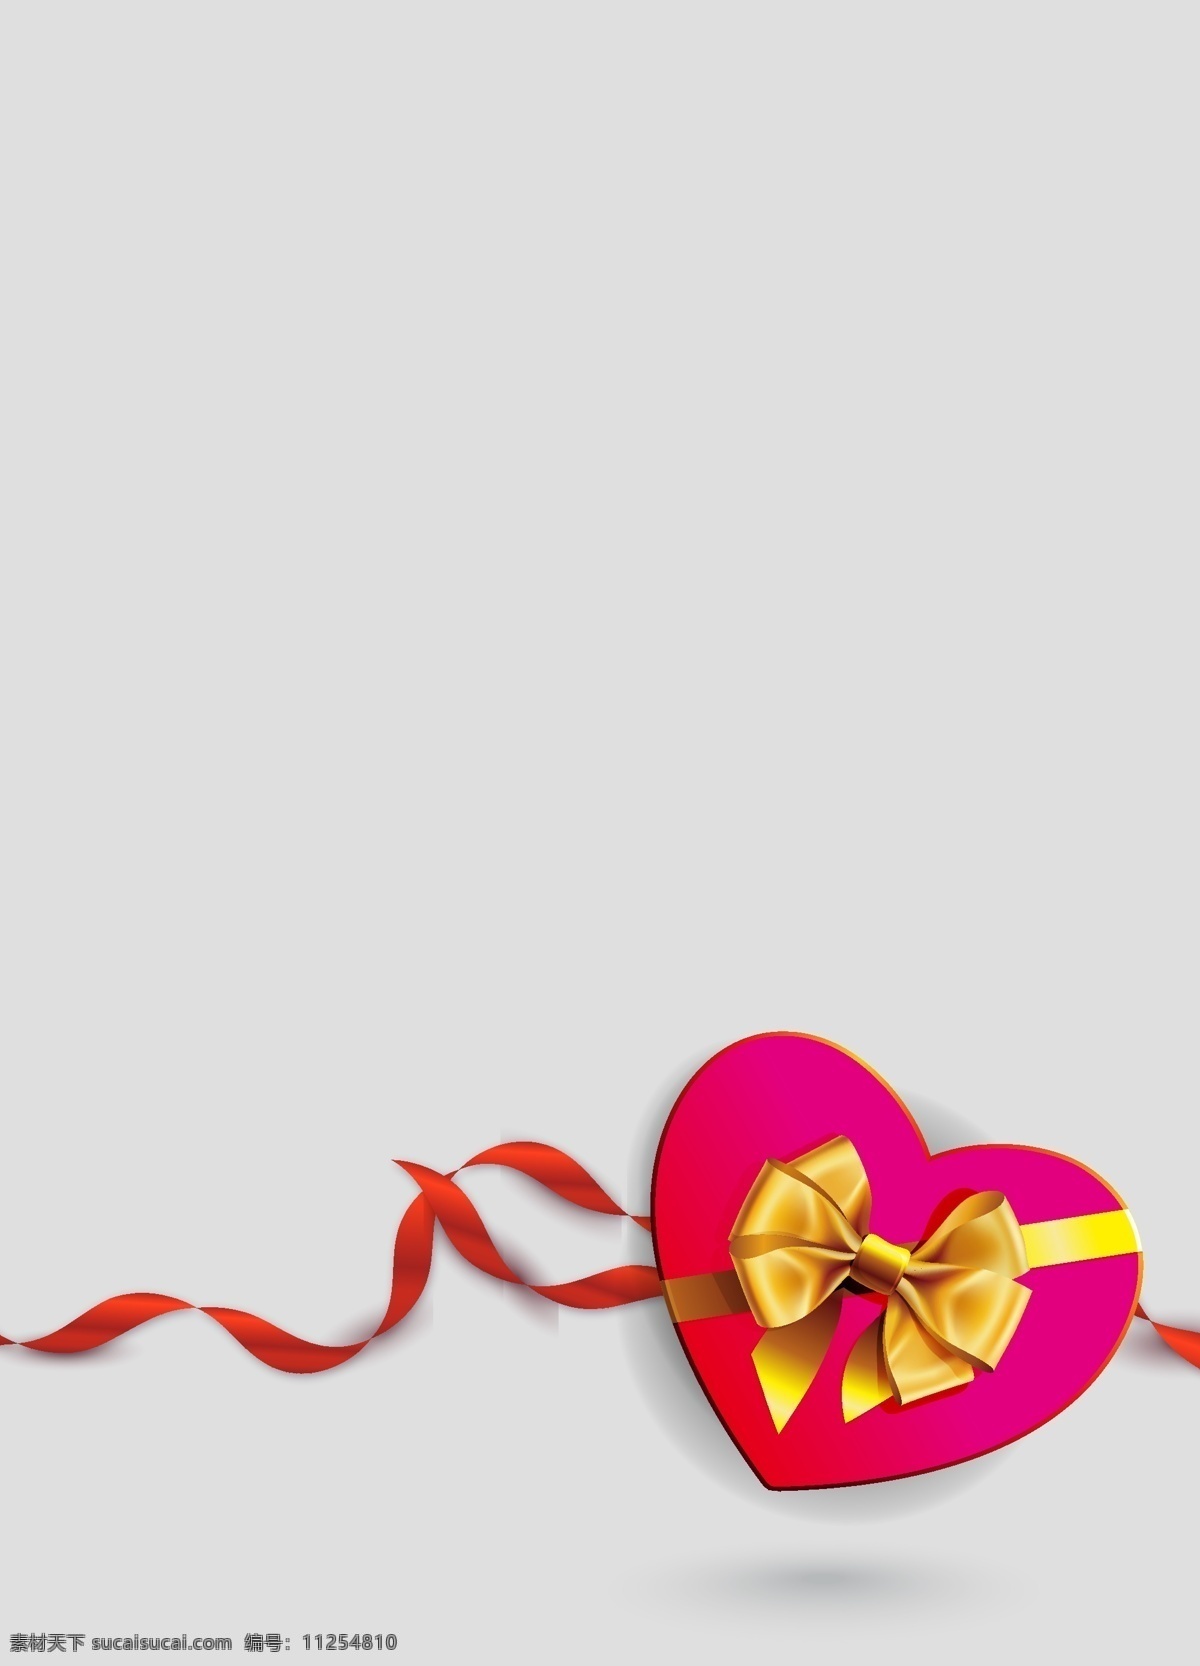 矢量 质感 情人节 心形 礼物 盒 背景 金色 丝带 灰色 粉色 礼物盒 巧克力 糖果盒 海报